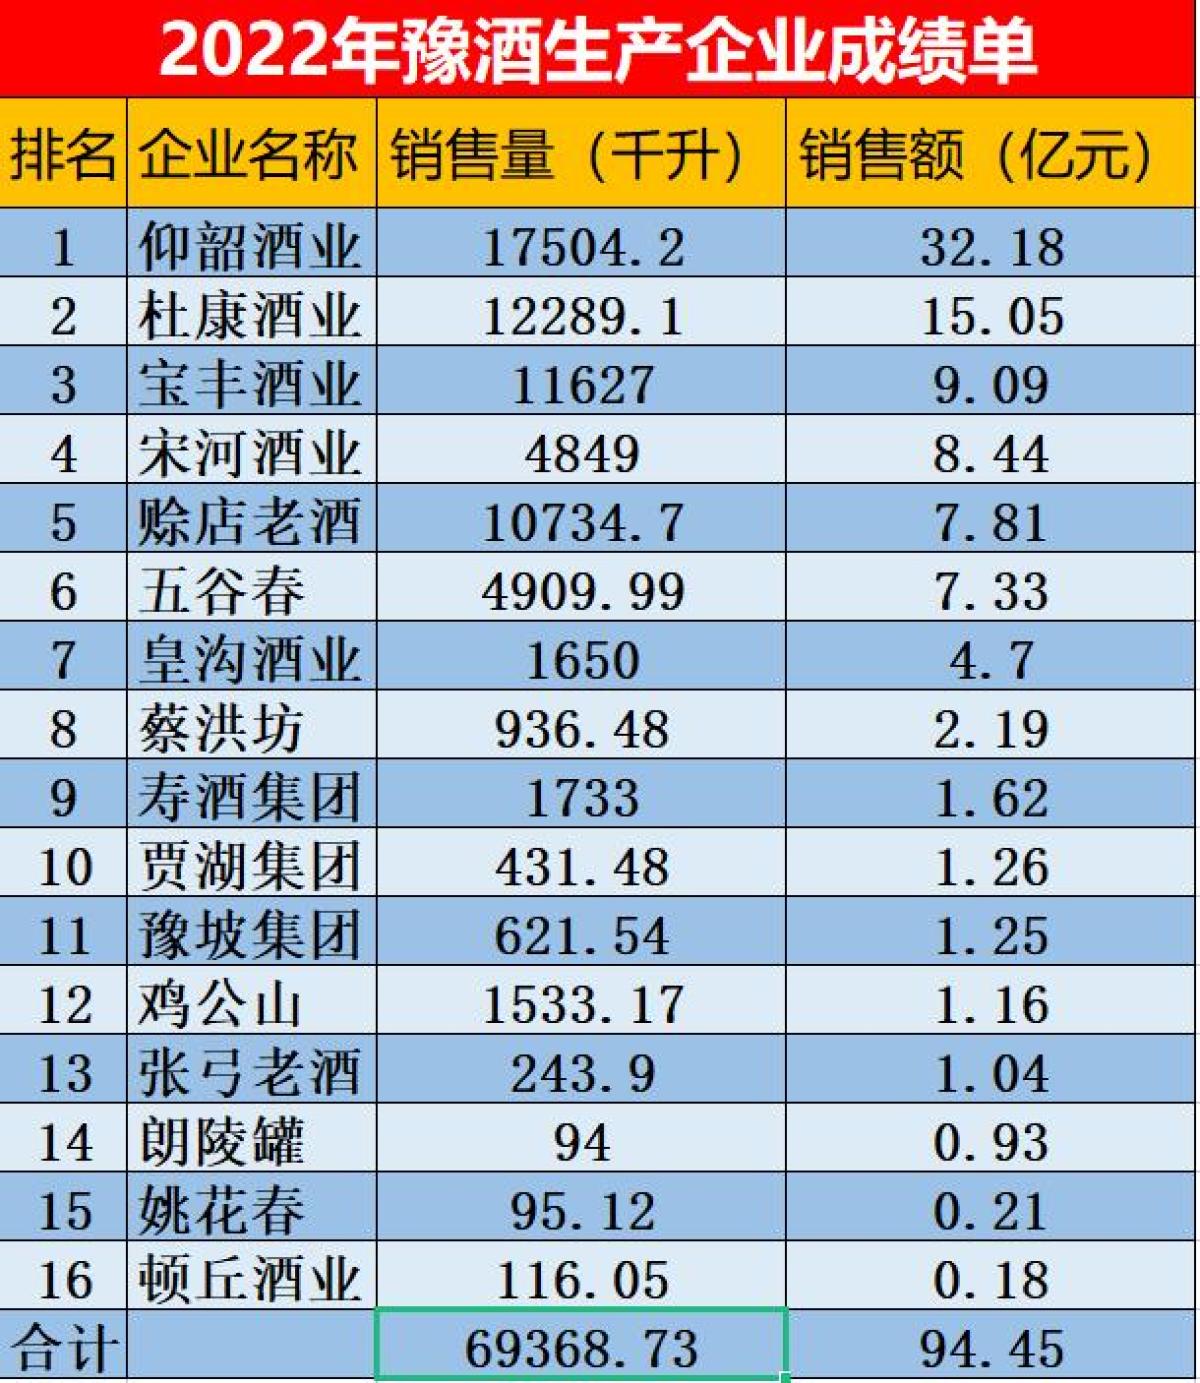 河南省首次公开披露16家豫酒生产企业销售成绩单，企业排序发生显著变化，全国化任重道远